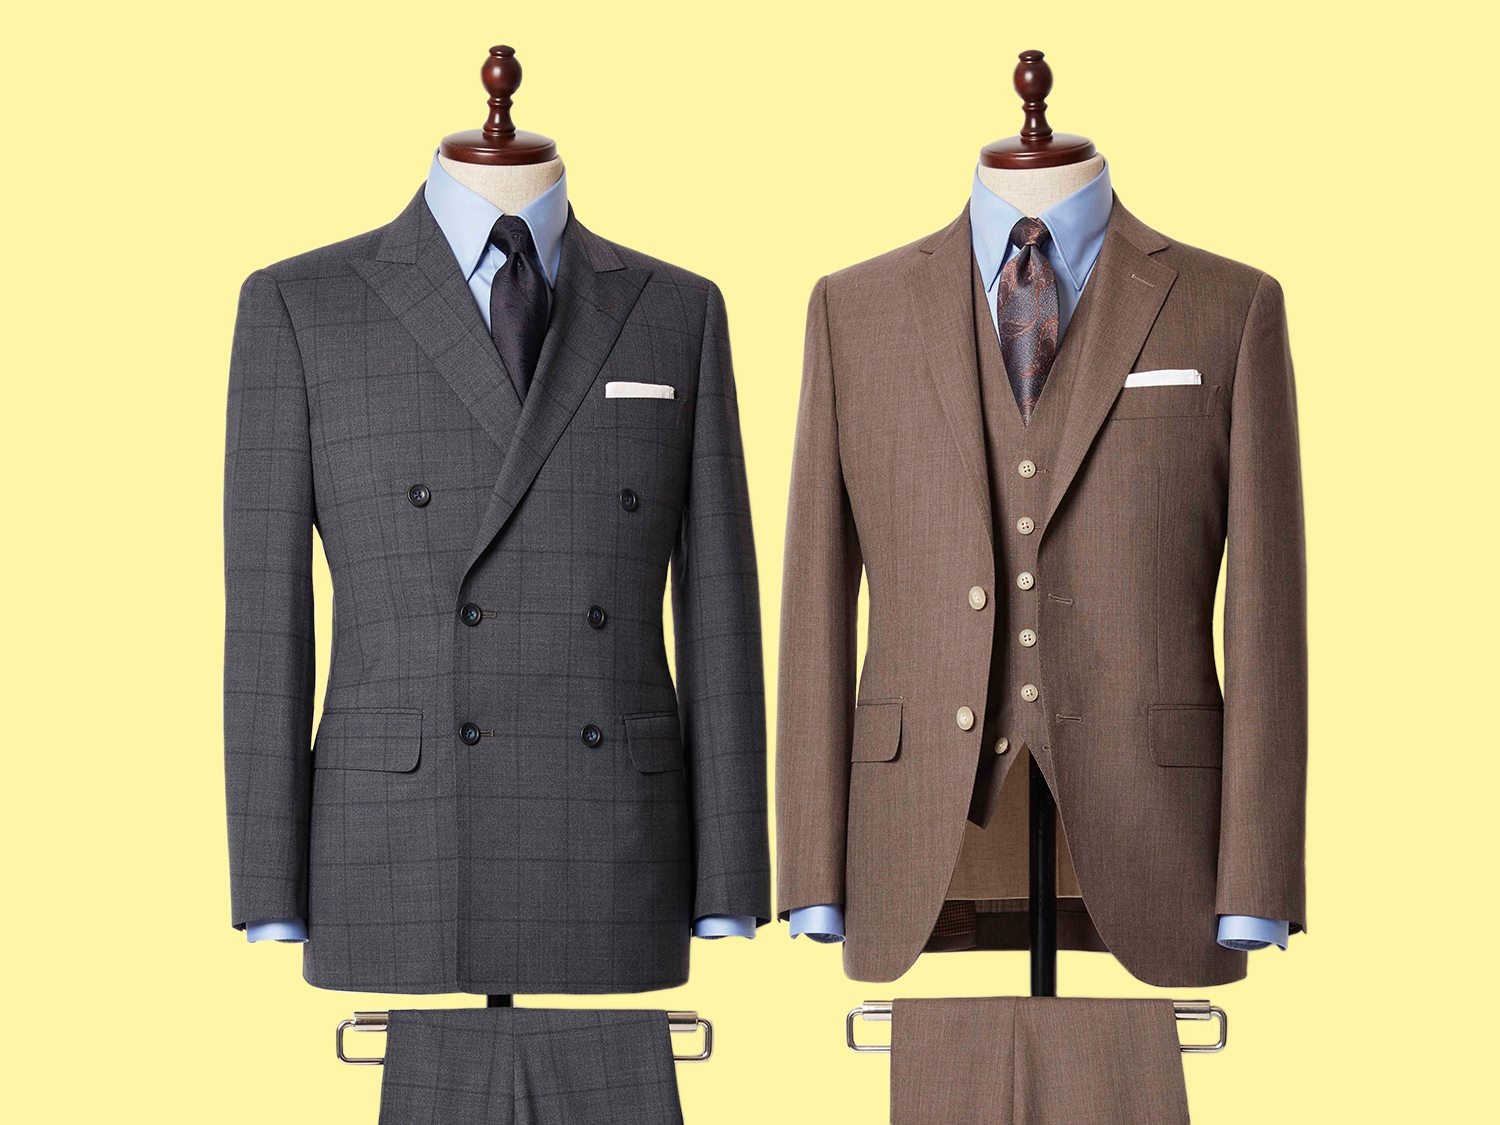 メンズ オーダーメイドスーツ bref（ブレフ）-スーツ「NARROW MODEL」（細身スーツ）/「BRITISH MODEL」（英国風スーツ）/「ITALIAN MODEL」（イタリア風スーツ）